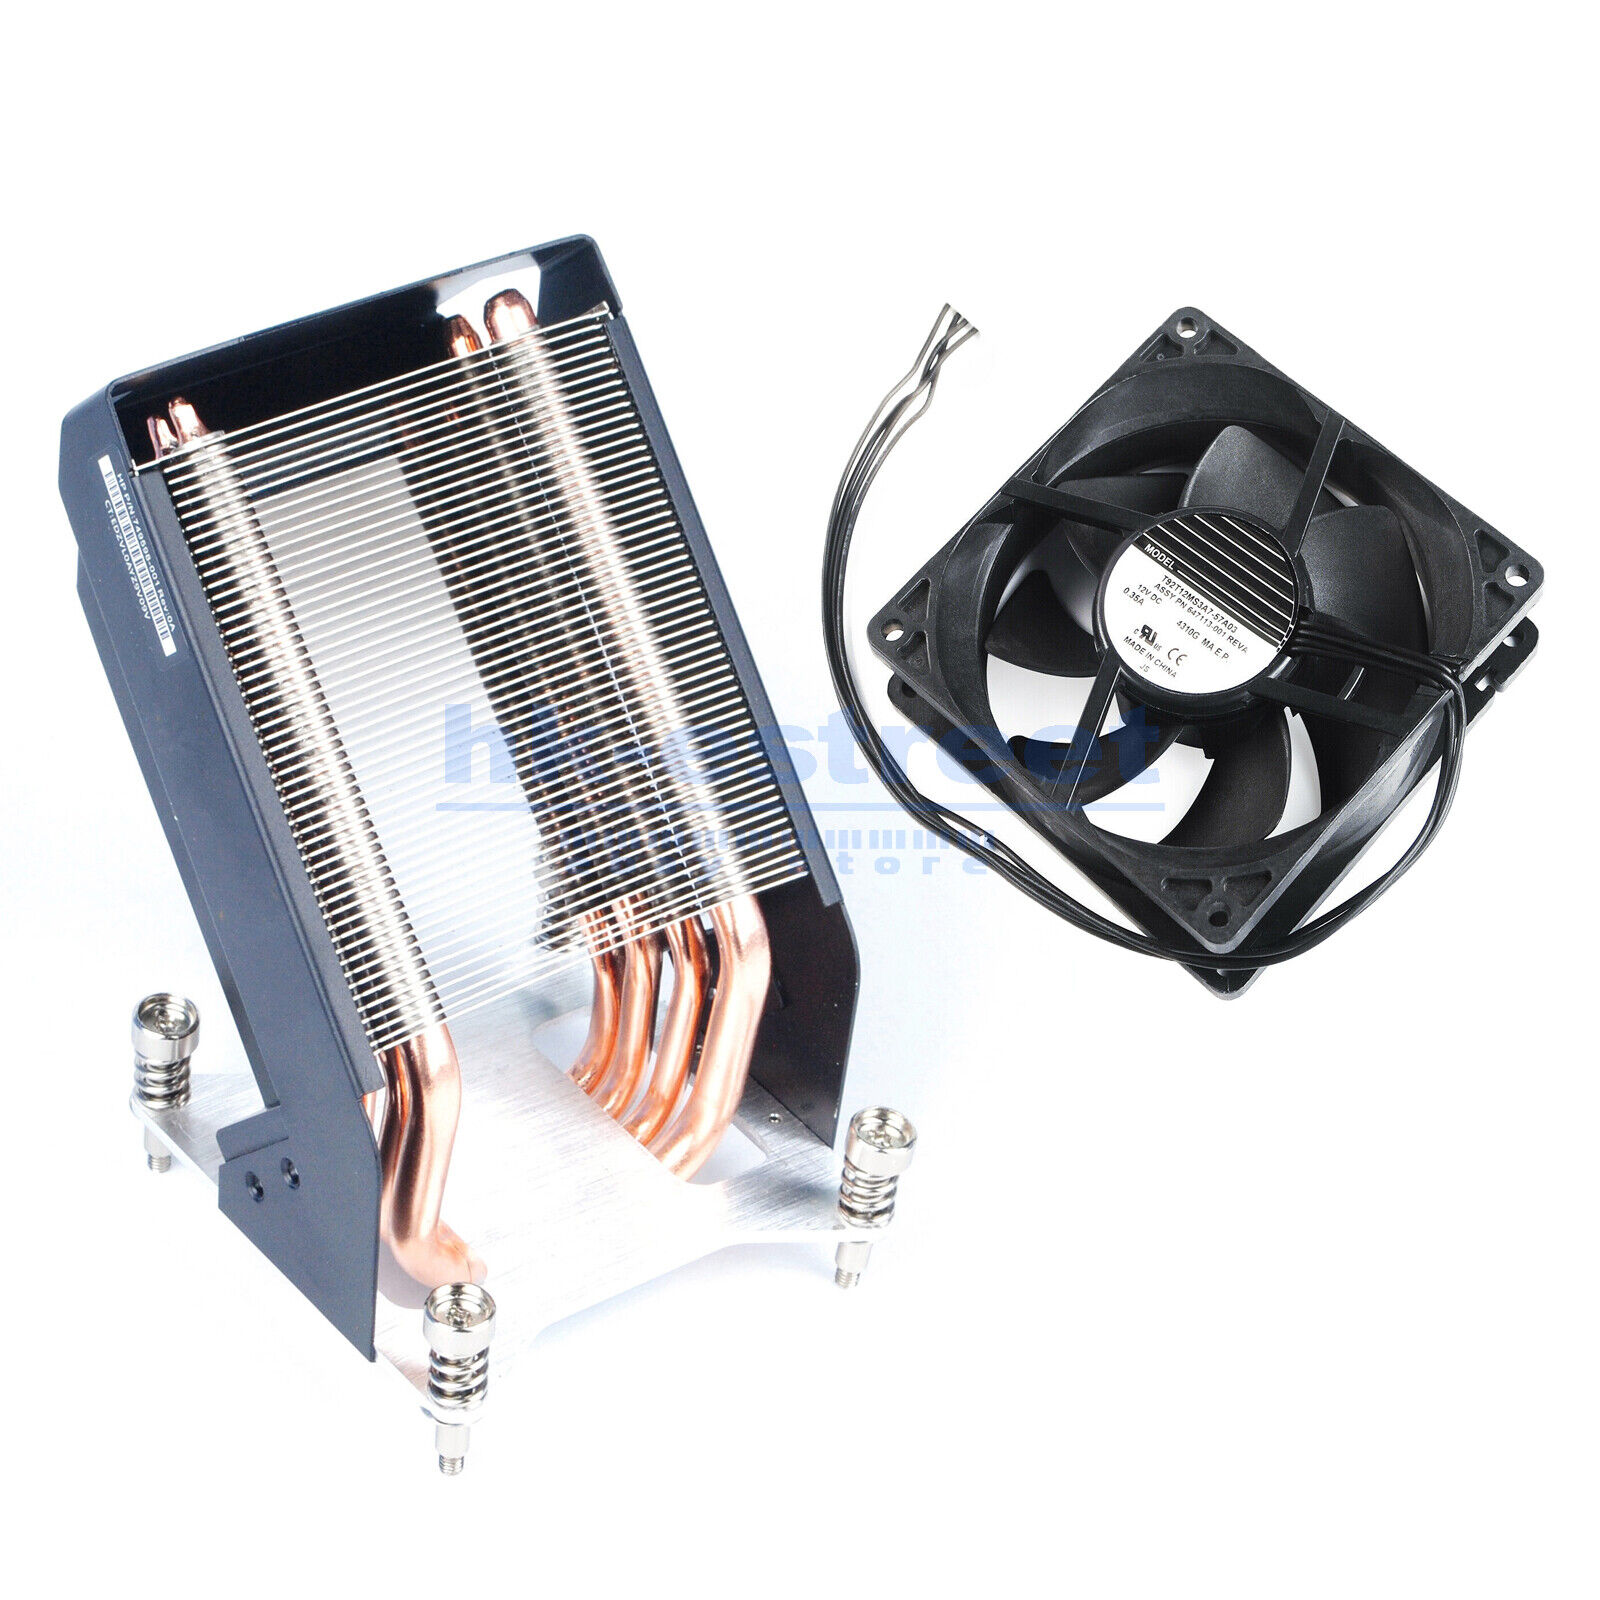 New Heatsink Kit for HP Z840 Z820 749598-001 782506-001 w/ CPU Fan 647113-001